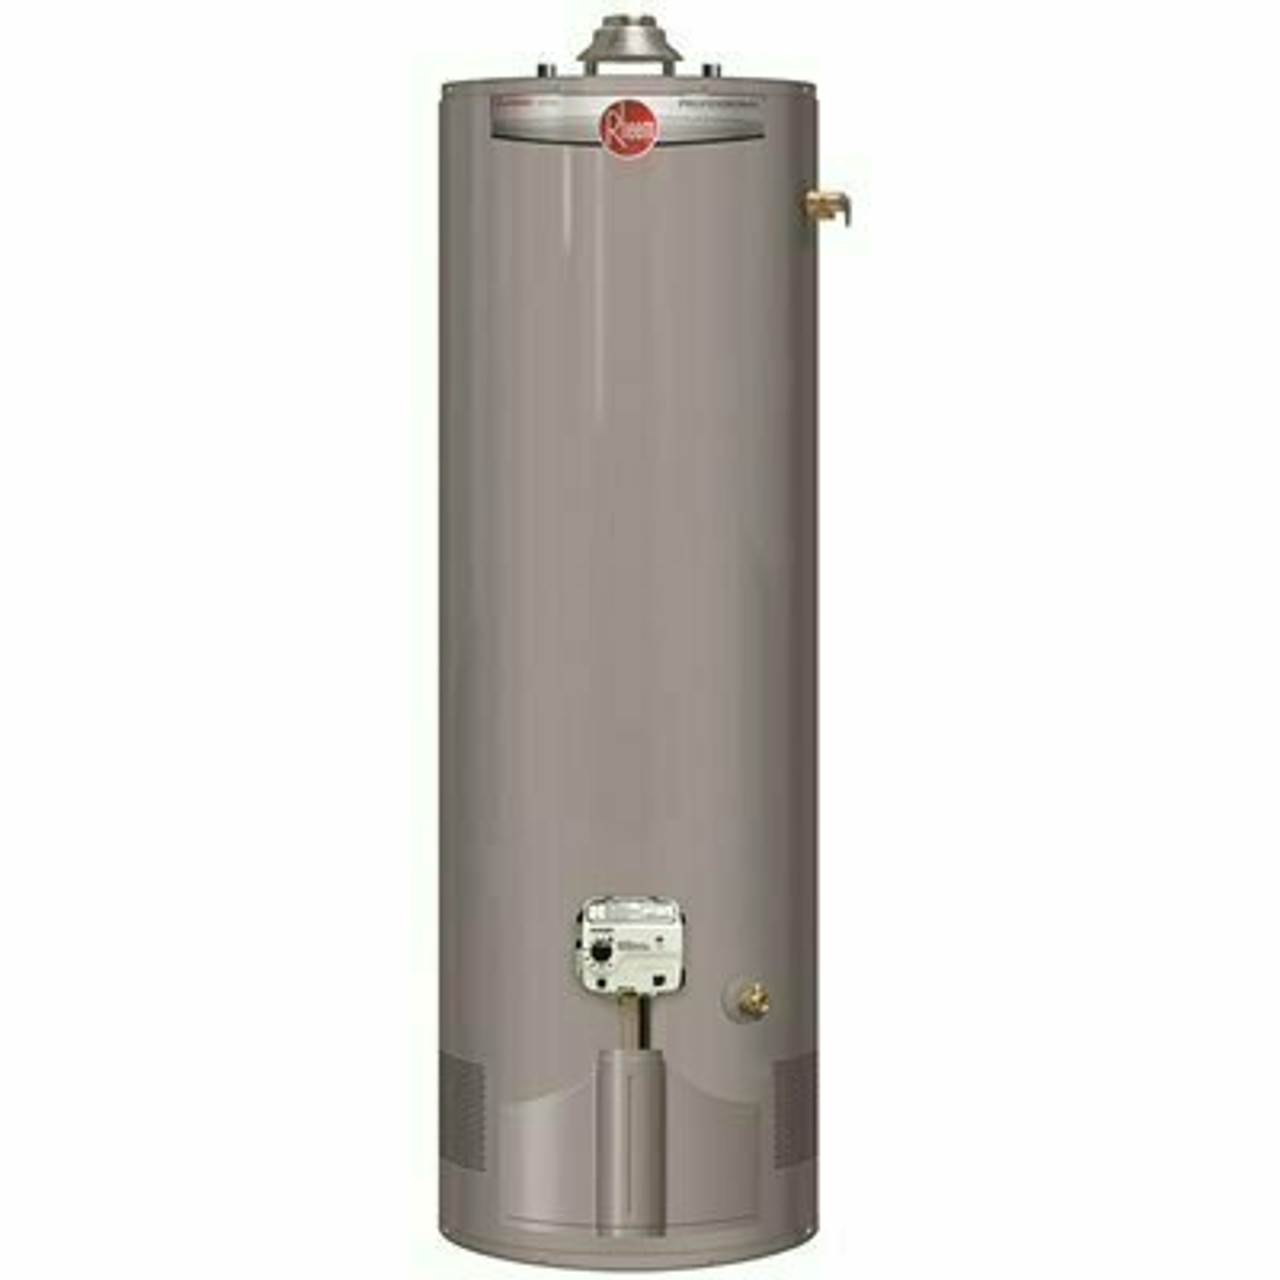 Rheem Professional Classic 40 Gal Tall 6-Year 38,000 Btu Ultra Low Nox Natural Gas Water Heater